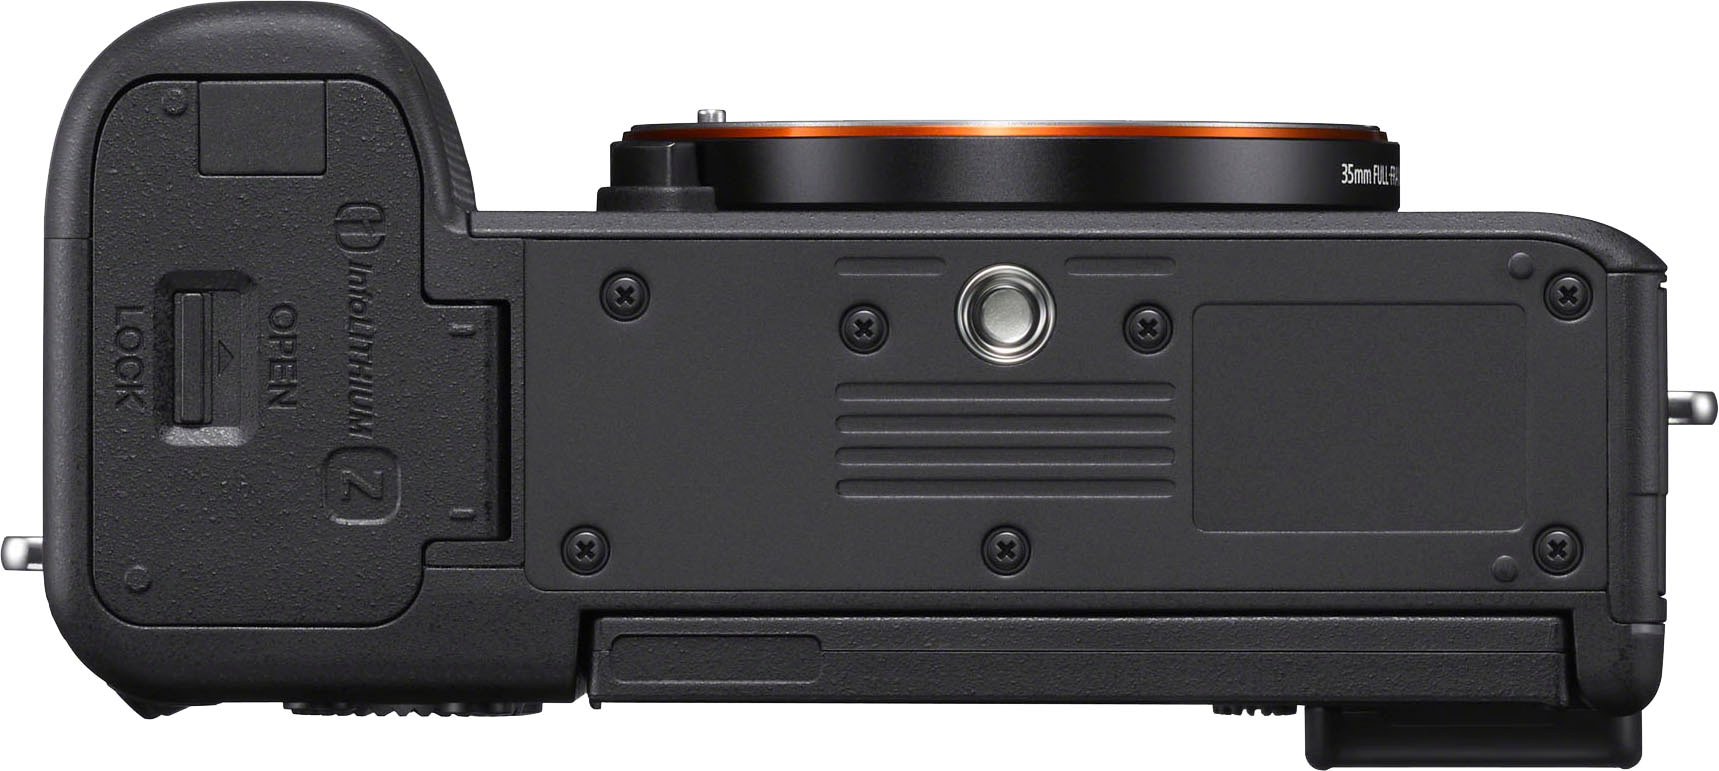 Sony Systemkamera »A7C«, 24,2 MP, 4K Video, 5-Achsen Bildstabilisierung, NFC, Bluetooth, nur Gehäuse